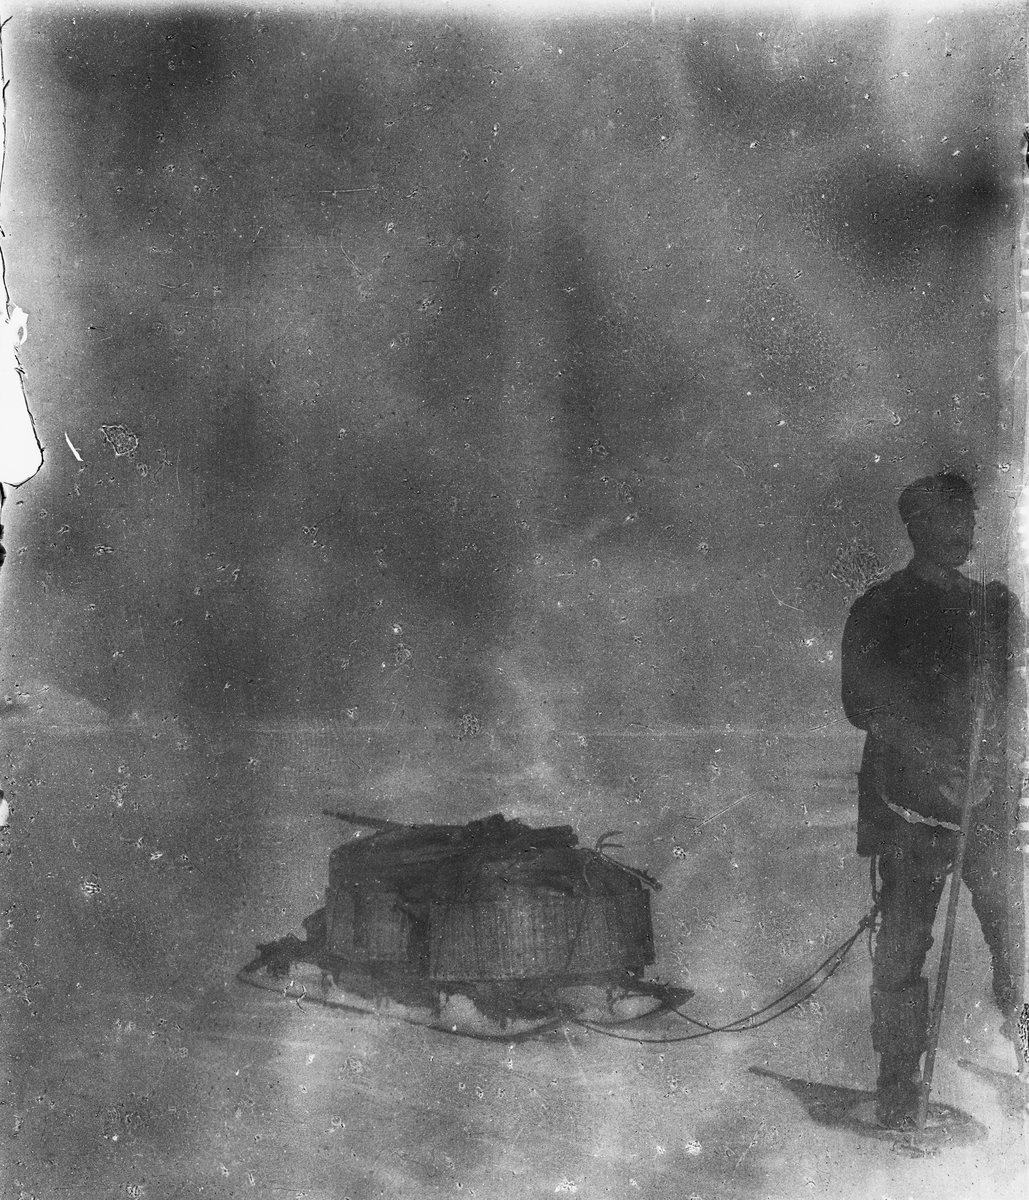 Nils Strindberg med lastad kälke under isvandandringen. Detta är enda tillfället då snöskorna syns i bruk. Framtagning av bilderna gjordes av docent John Hertzberg år 1930 på Fotografi, Tekniska Högskolan.